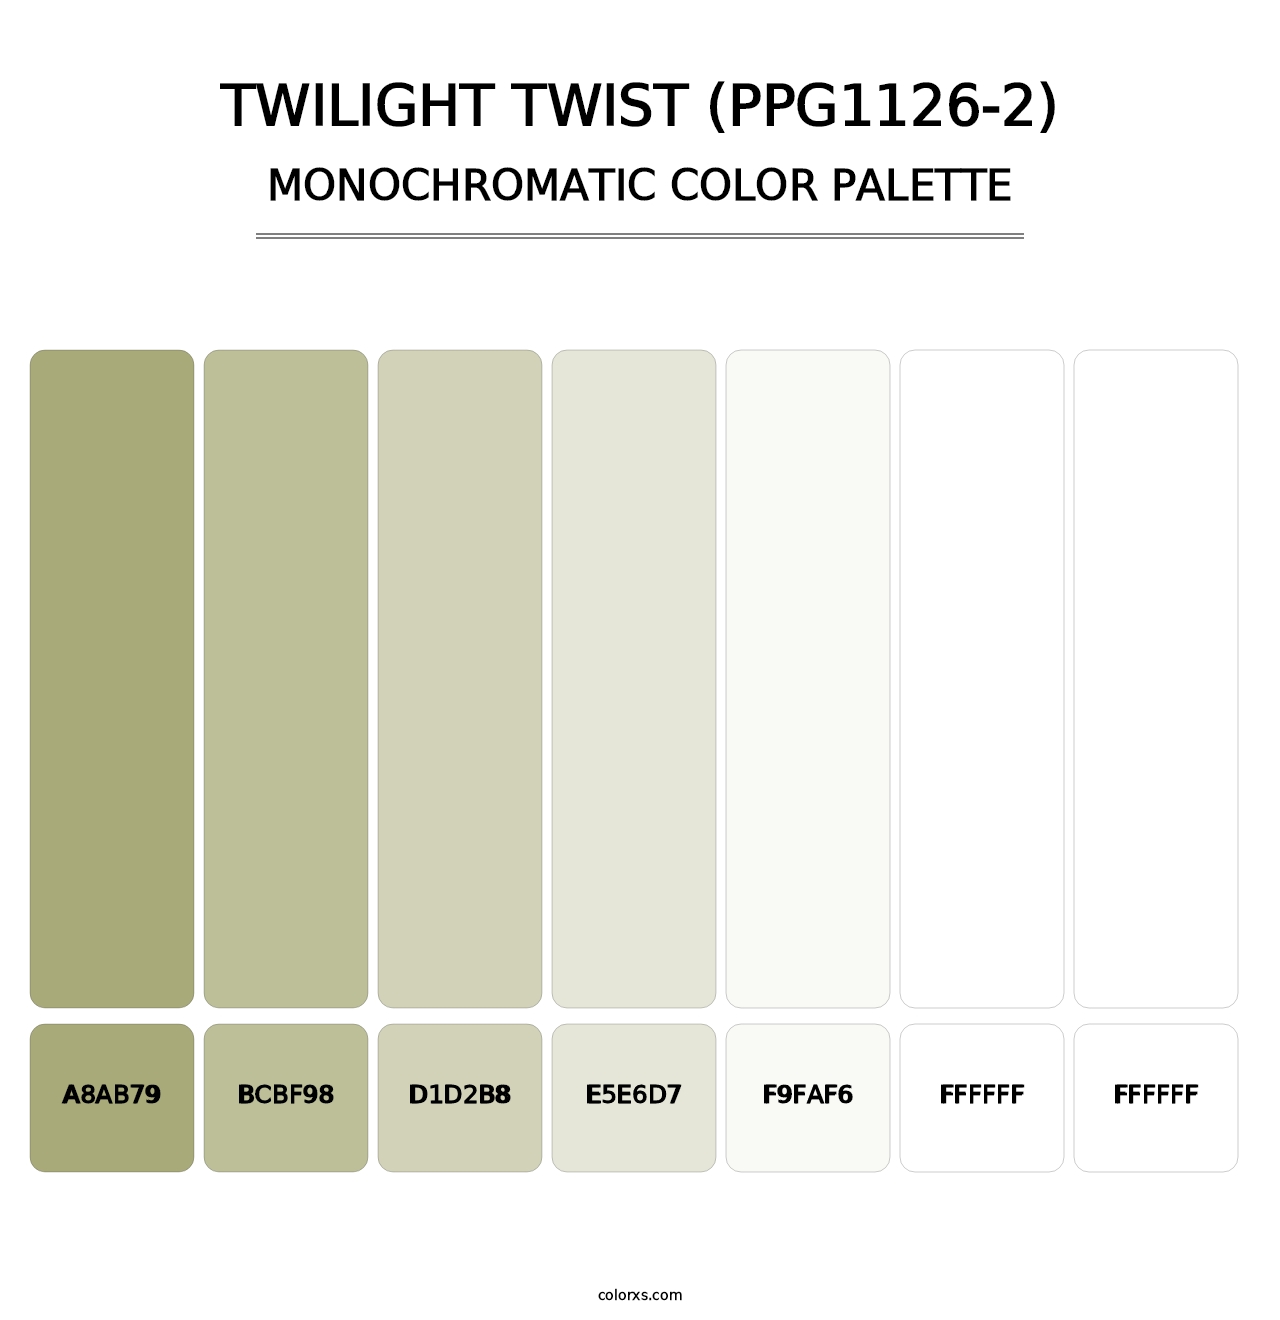 Twilight Twist (PPG1126-2) - Monochromatic Color Palette